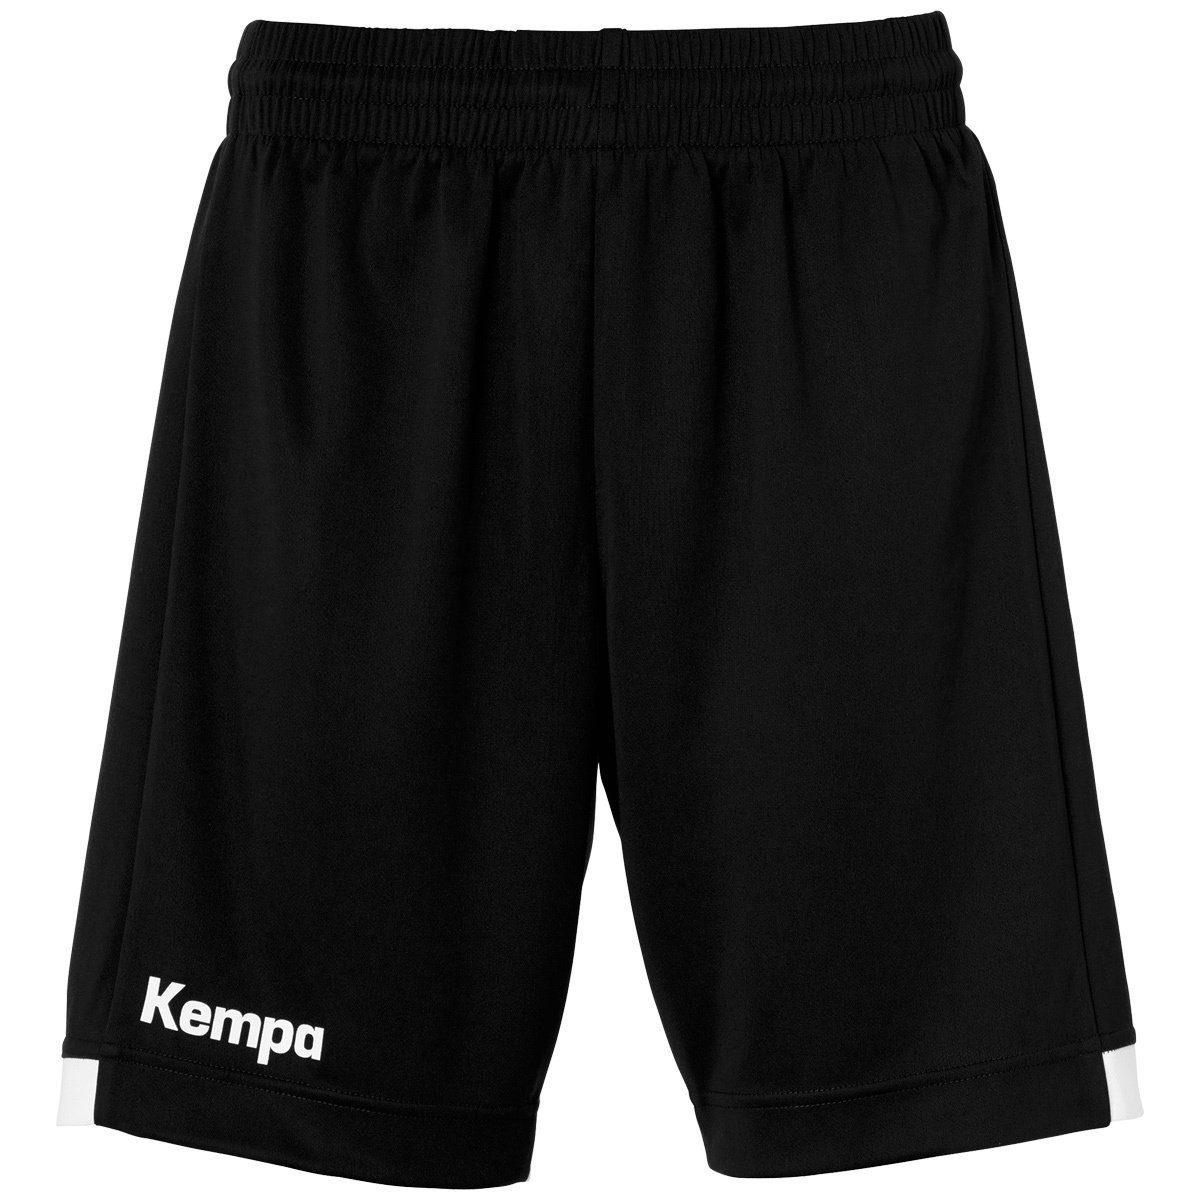 Kempa SHORTS PLAYER LONG schwarz/weiß Shorts Kempa Shorts WOMEN